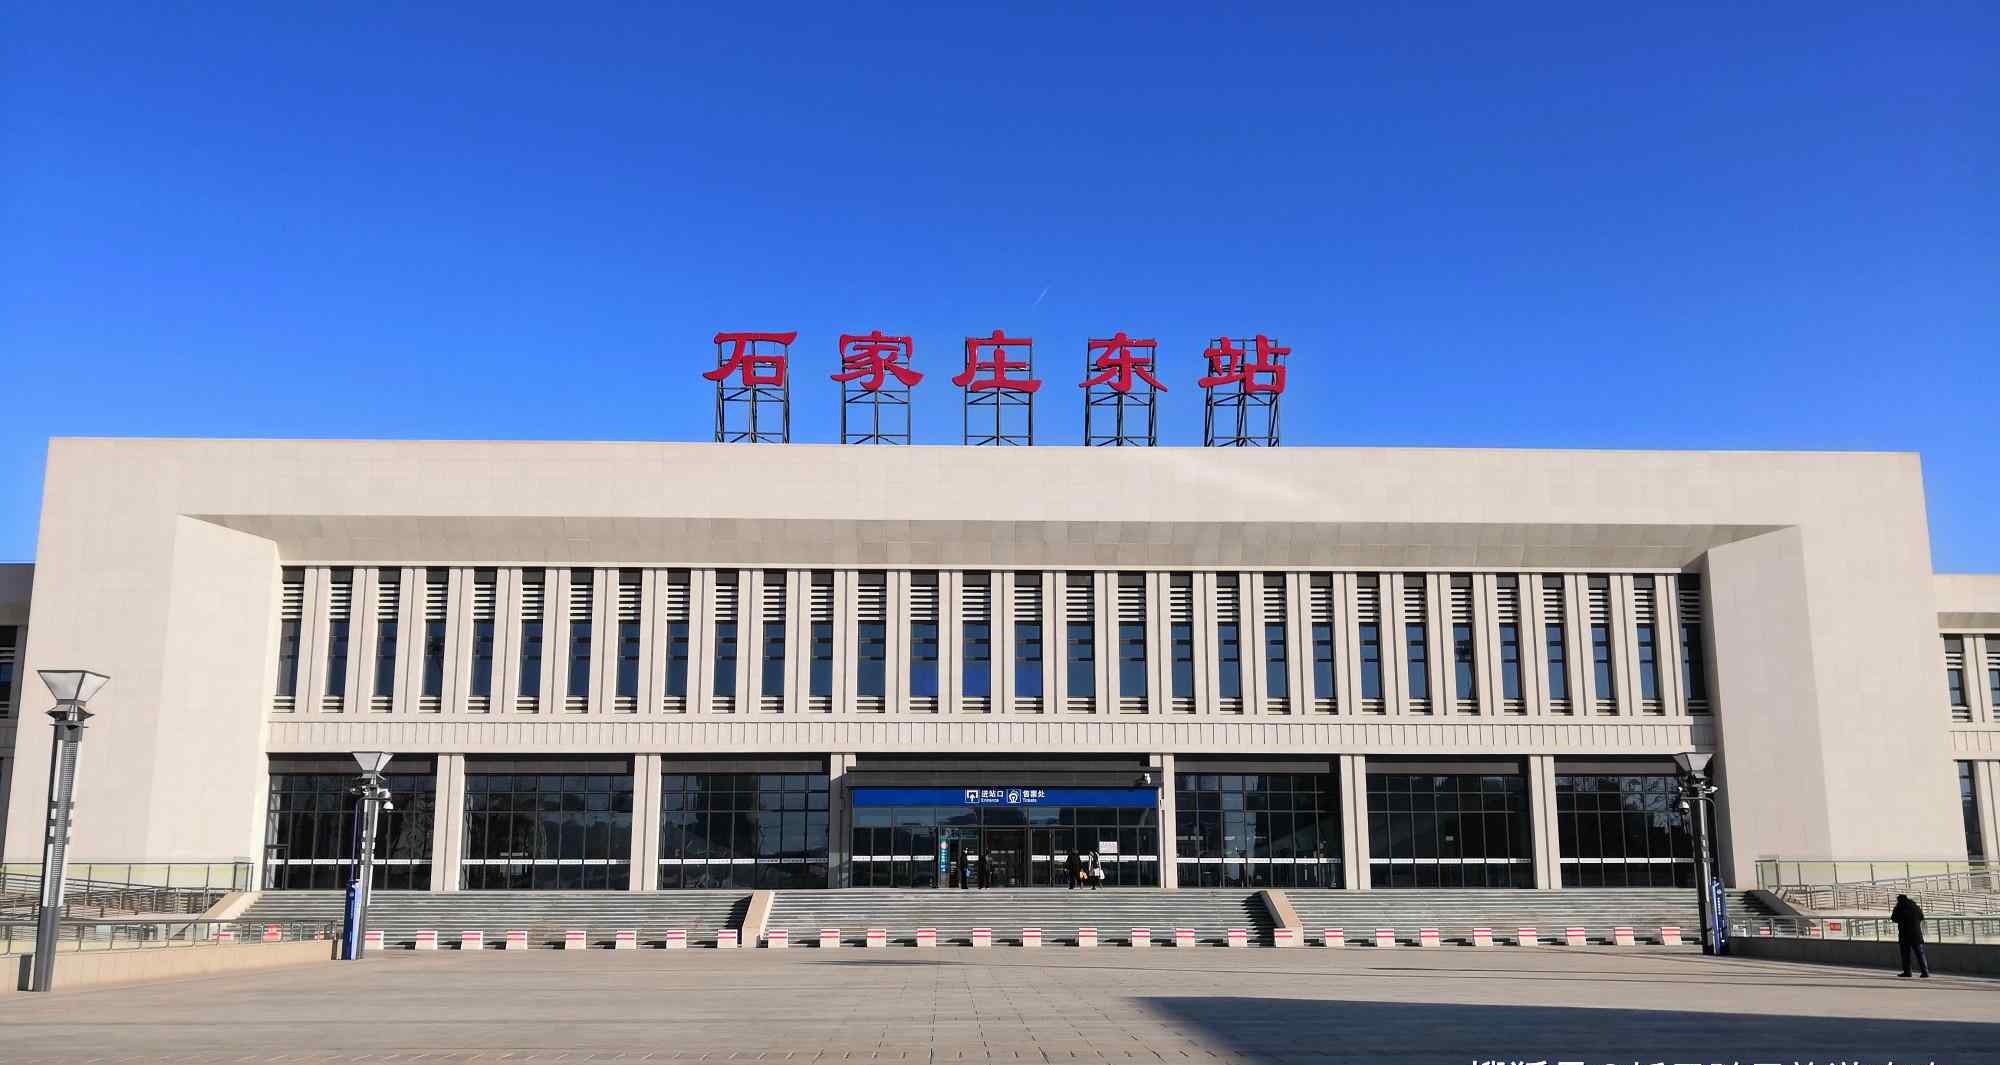 石家庄东站(ShijiazhuangdongRailway